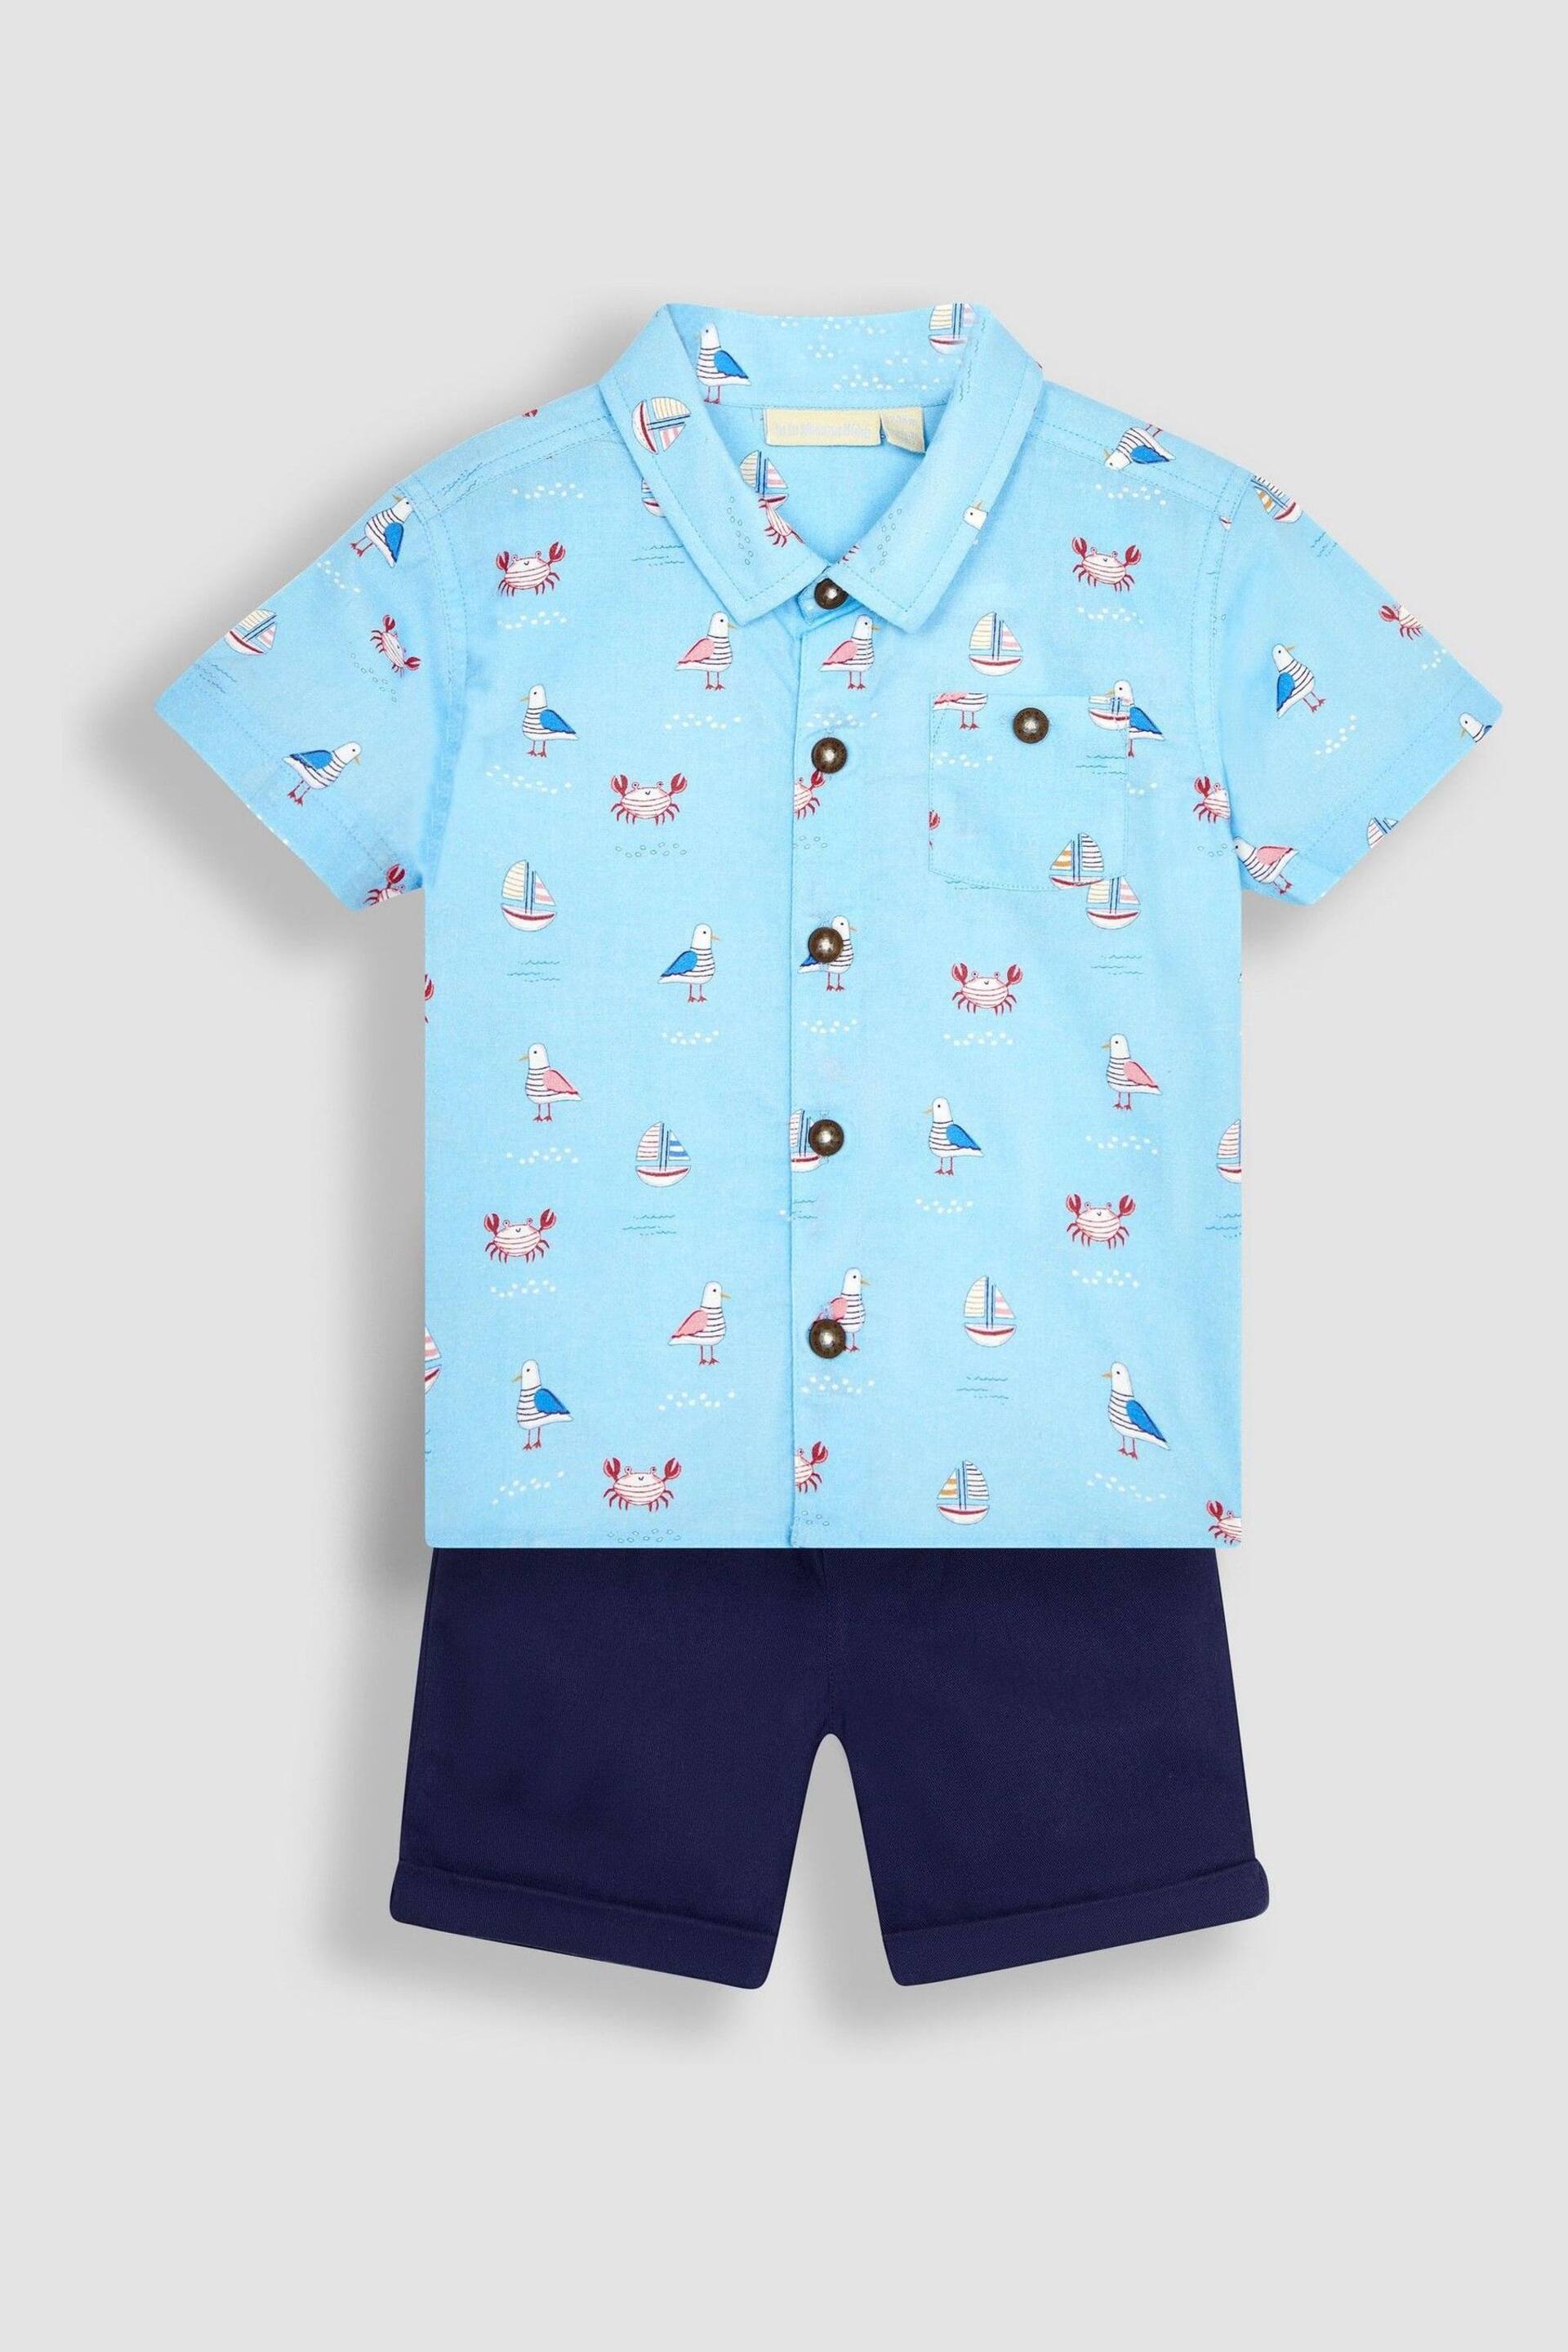 JoJo Maman Bébé Blue Nautical Printed Shirt & Shorts Set - Image 1 of 6